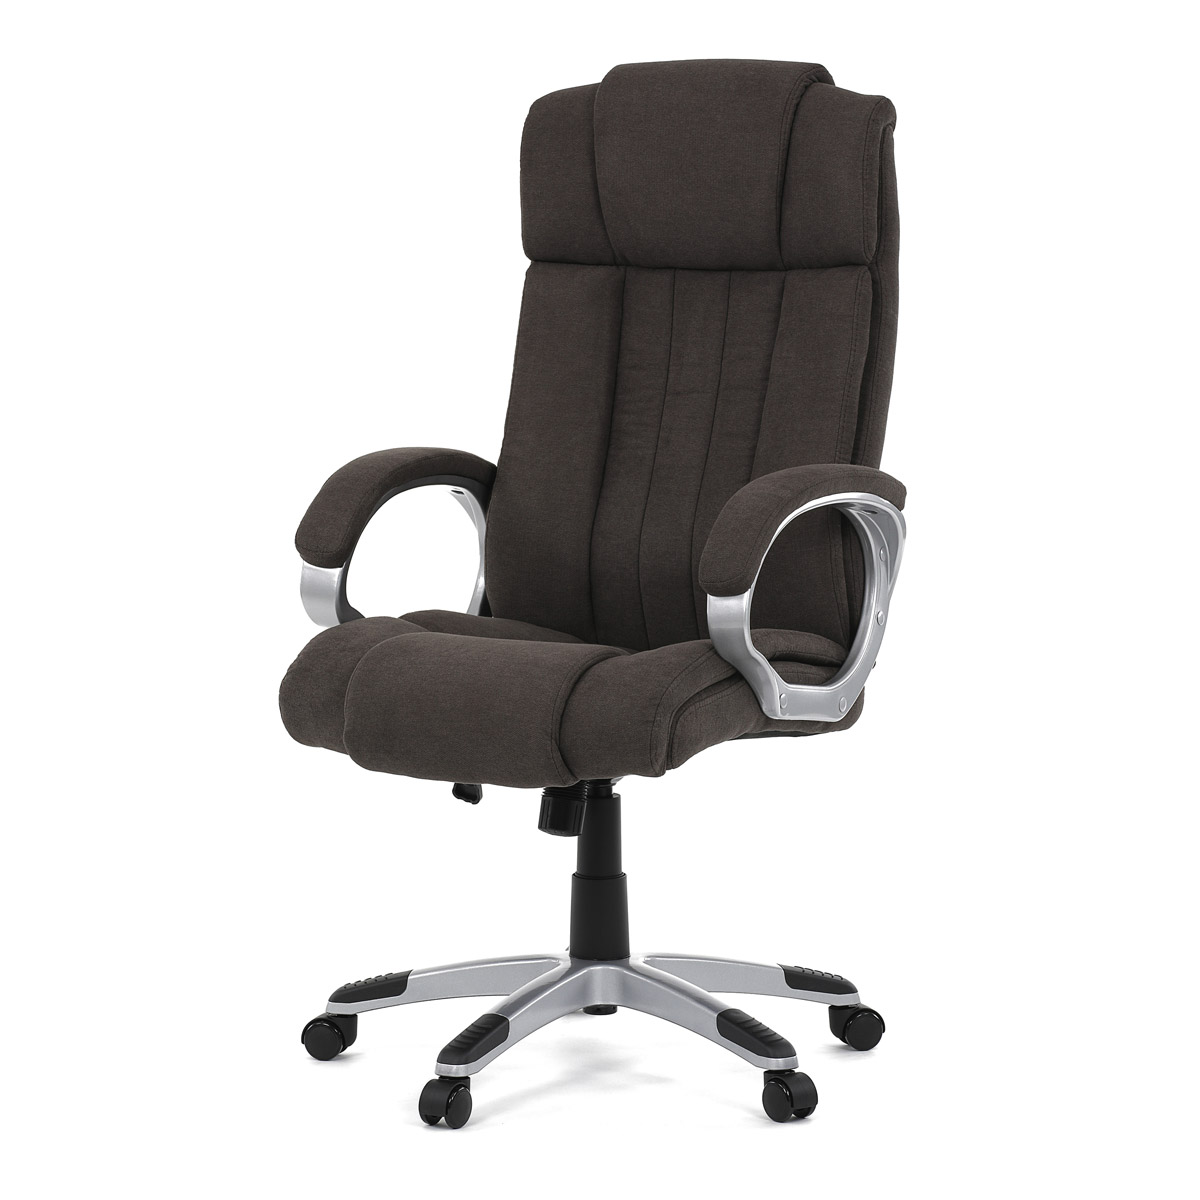 Kancelářská židle, plast ve stříbrné barvě, hnědá látka, kolečka pro tvrdé podla